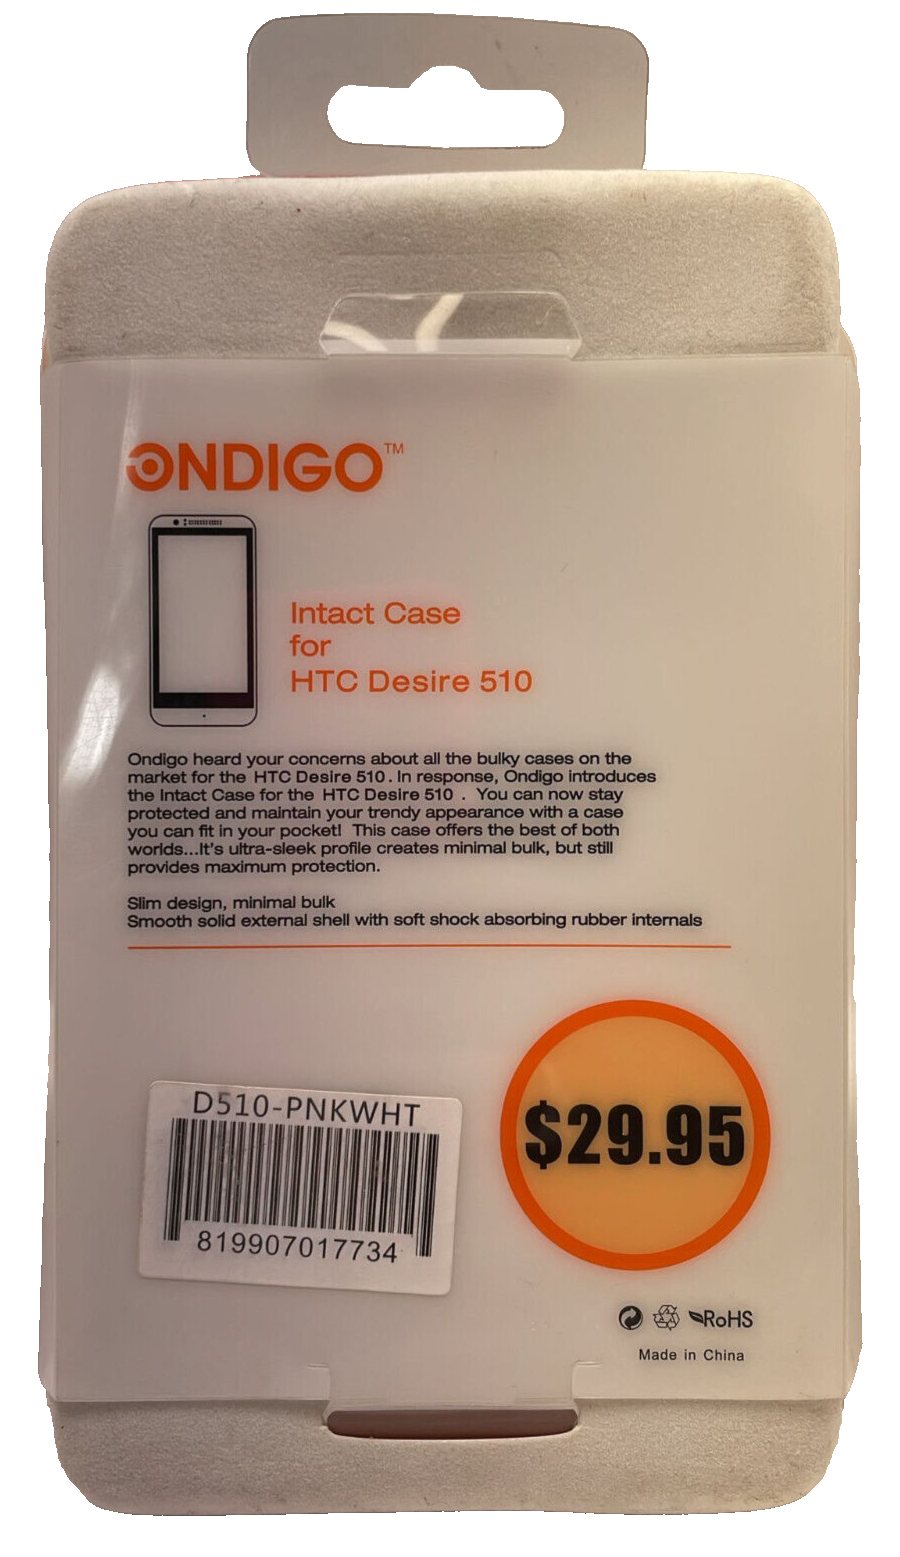 ONDIGO Intact Hard Case for HTC Desire 510 - Pink/White ONDIGO D510-PNKWHT - фотография #2